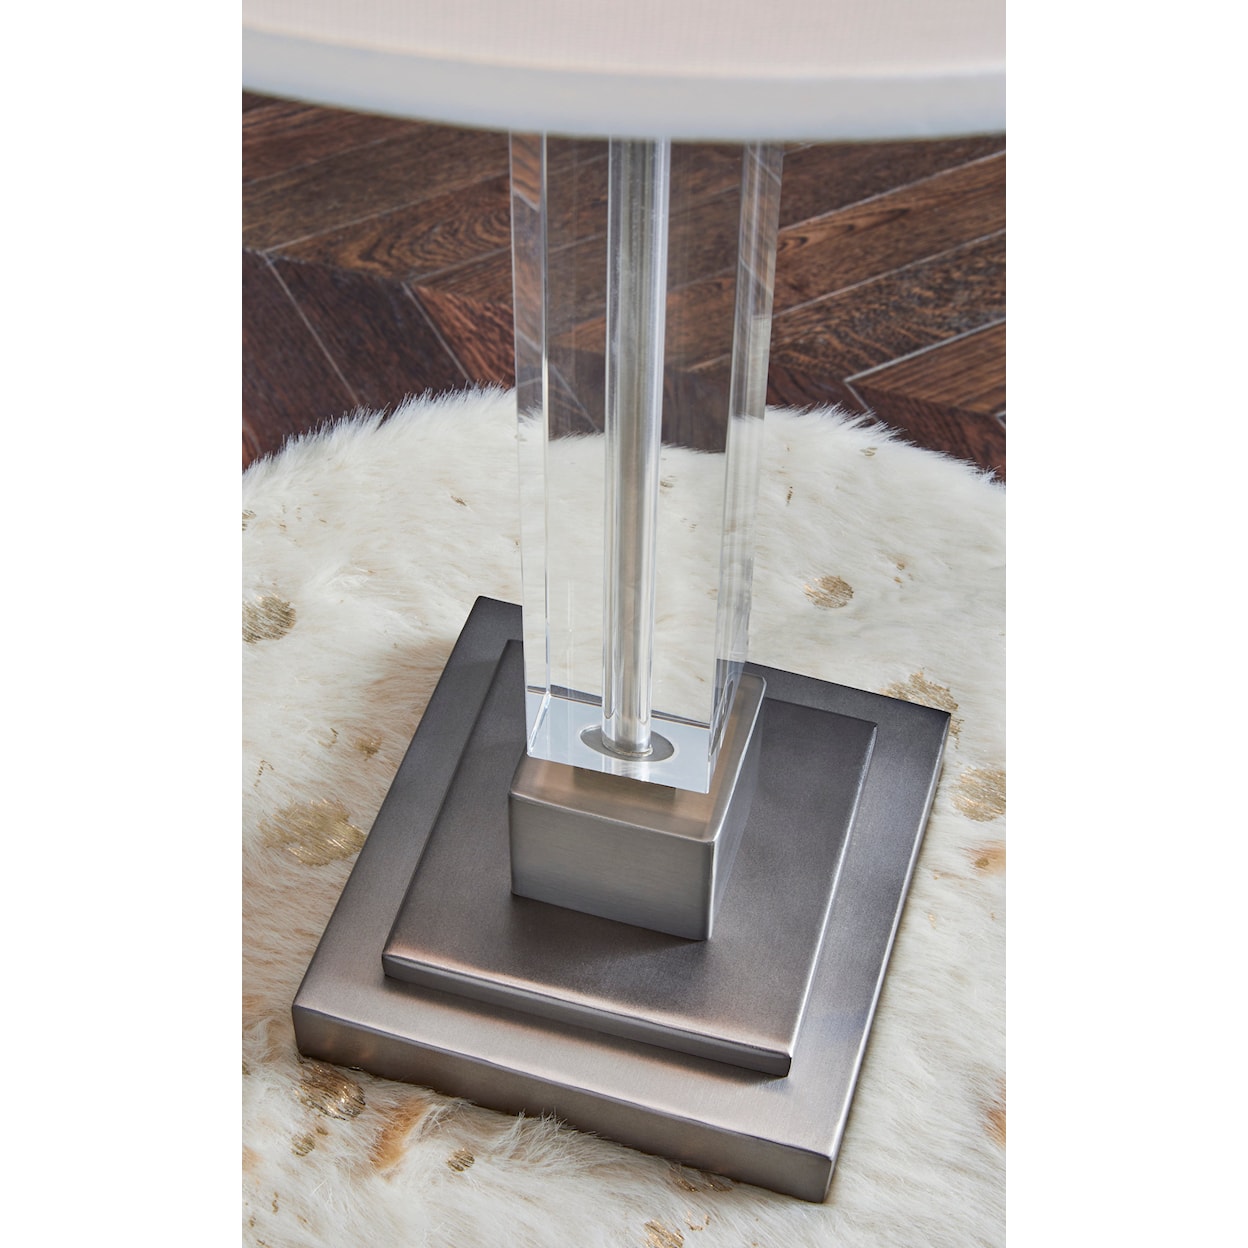 Ashley Furniture Signature Design Lamps - Contemporary Deccalen Table Lamp